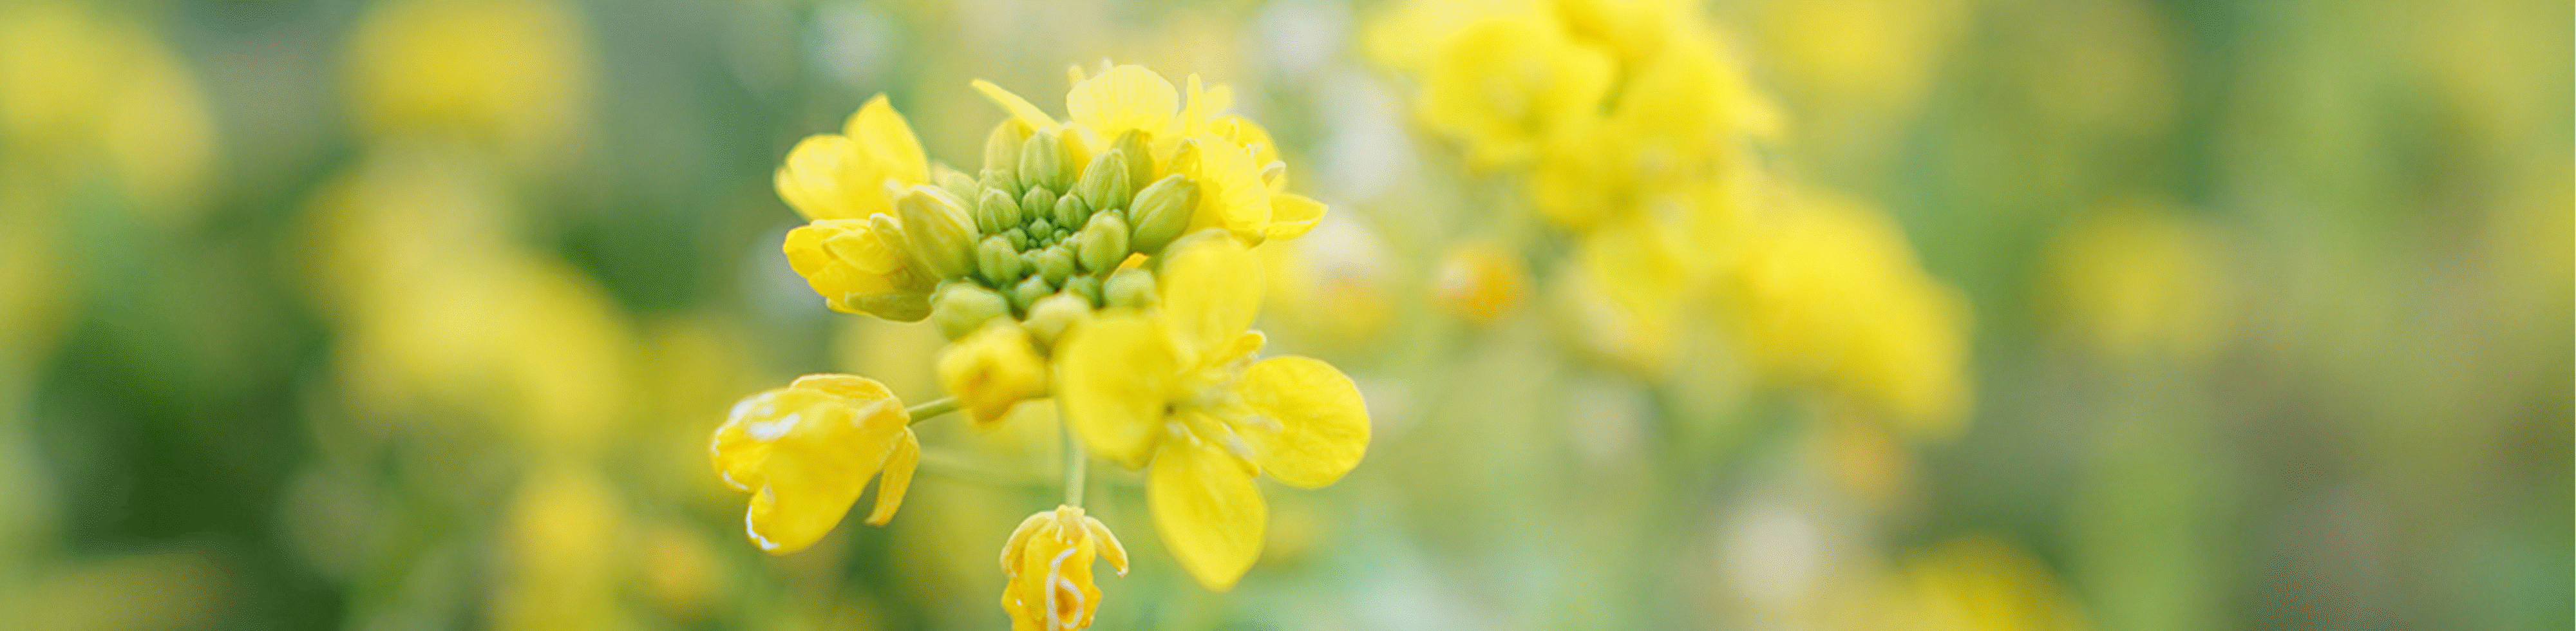 Зображення жовтих квітів